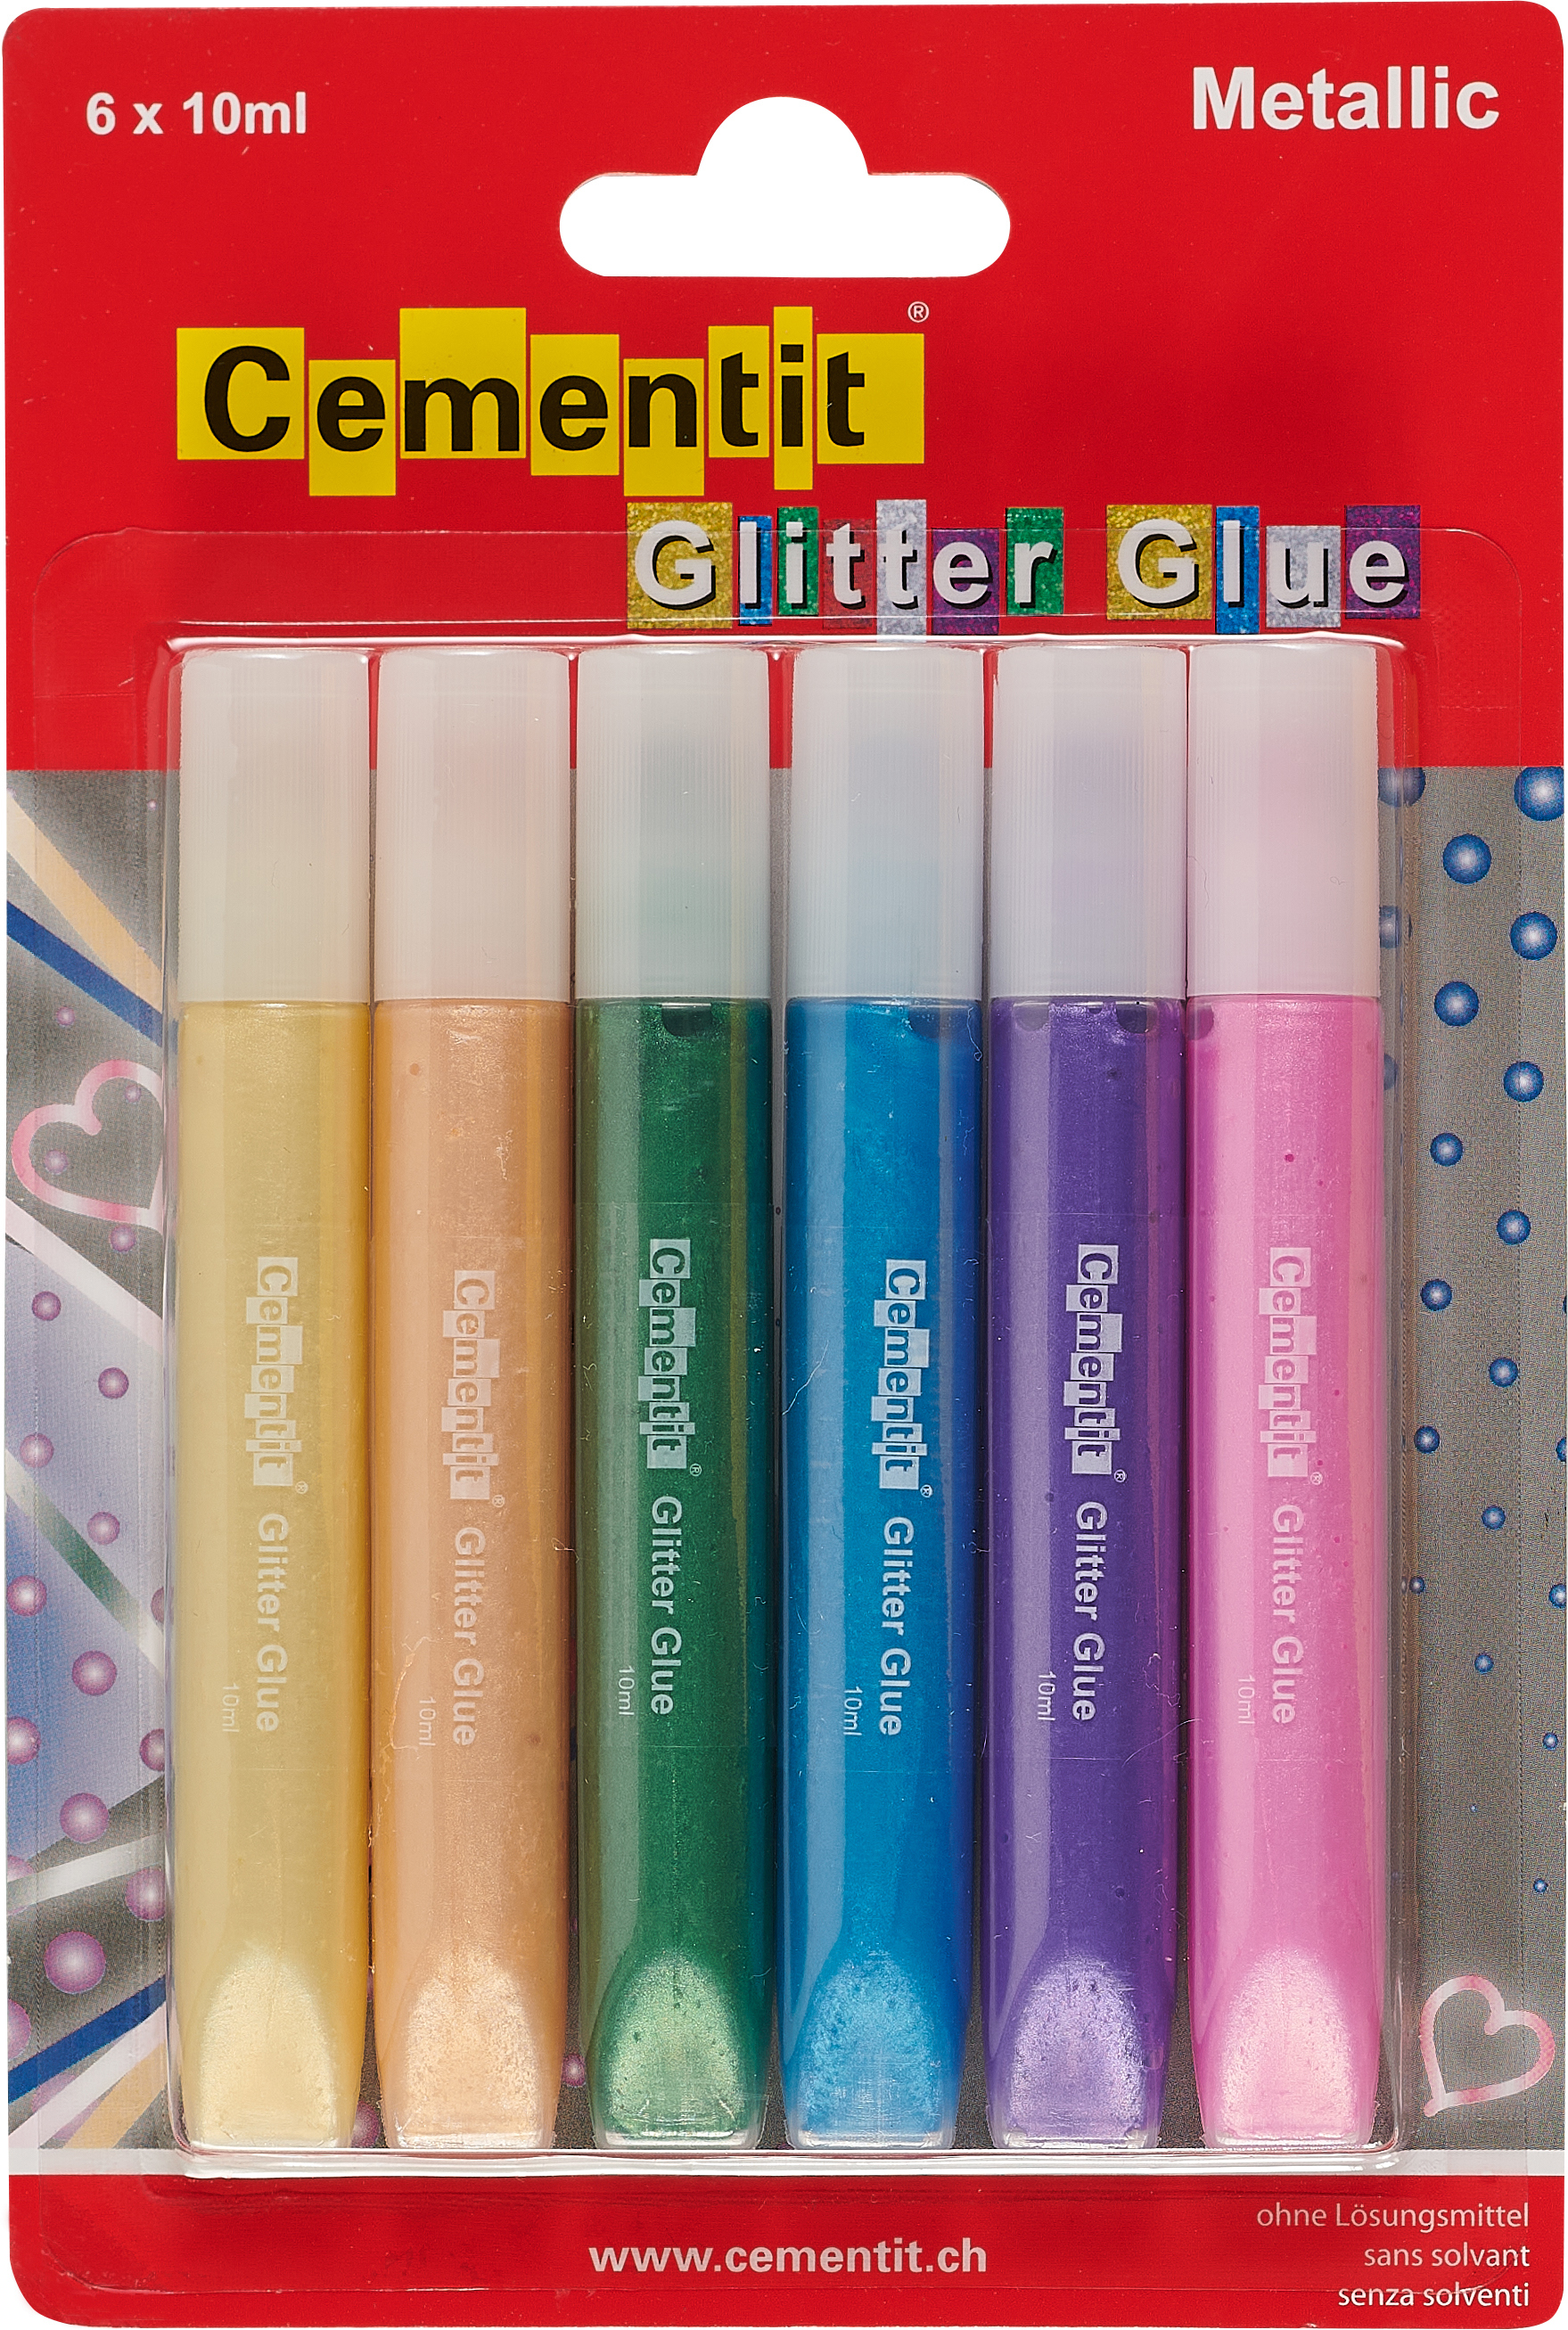 CEMENTIT Glitter Glue Metallic 52.016.20 6x10ml 6x10ml